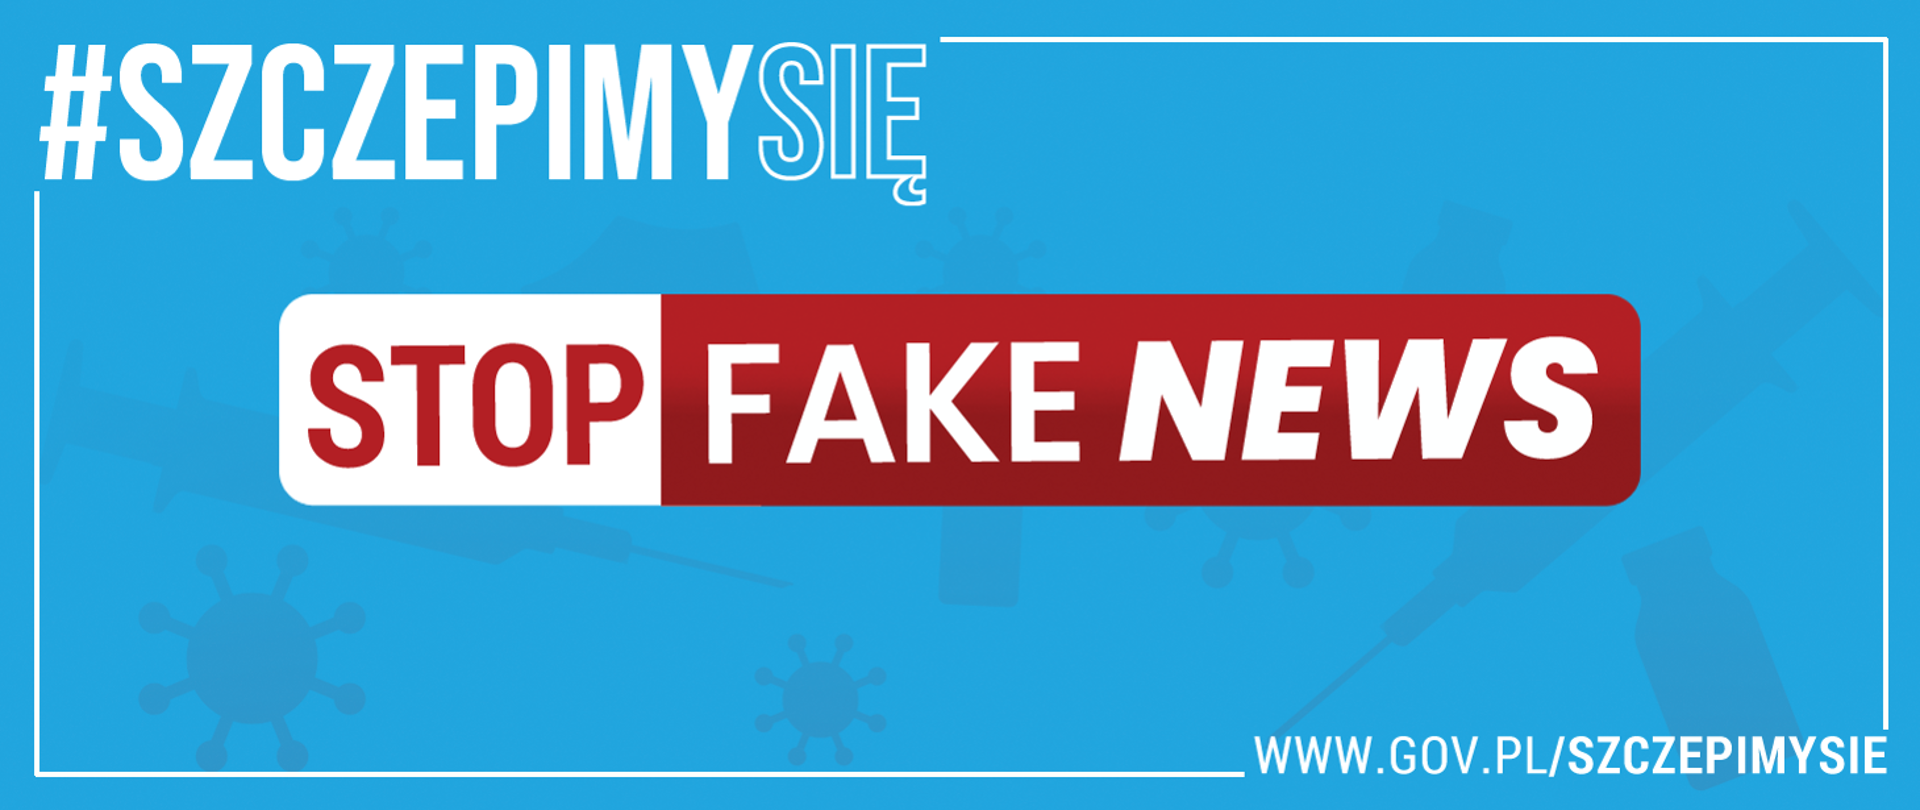 #SzczepimySię Stop Fake News